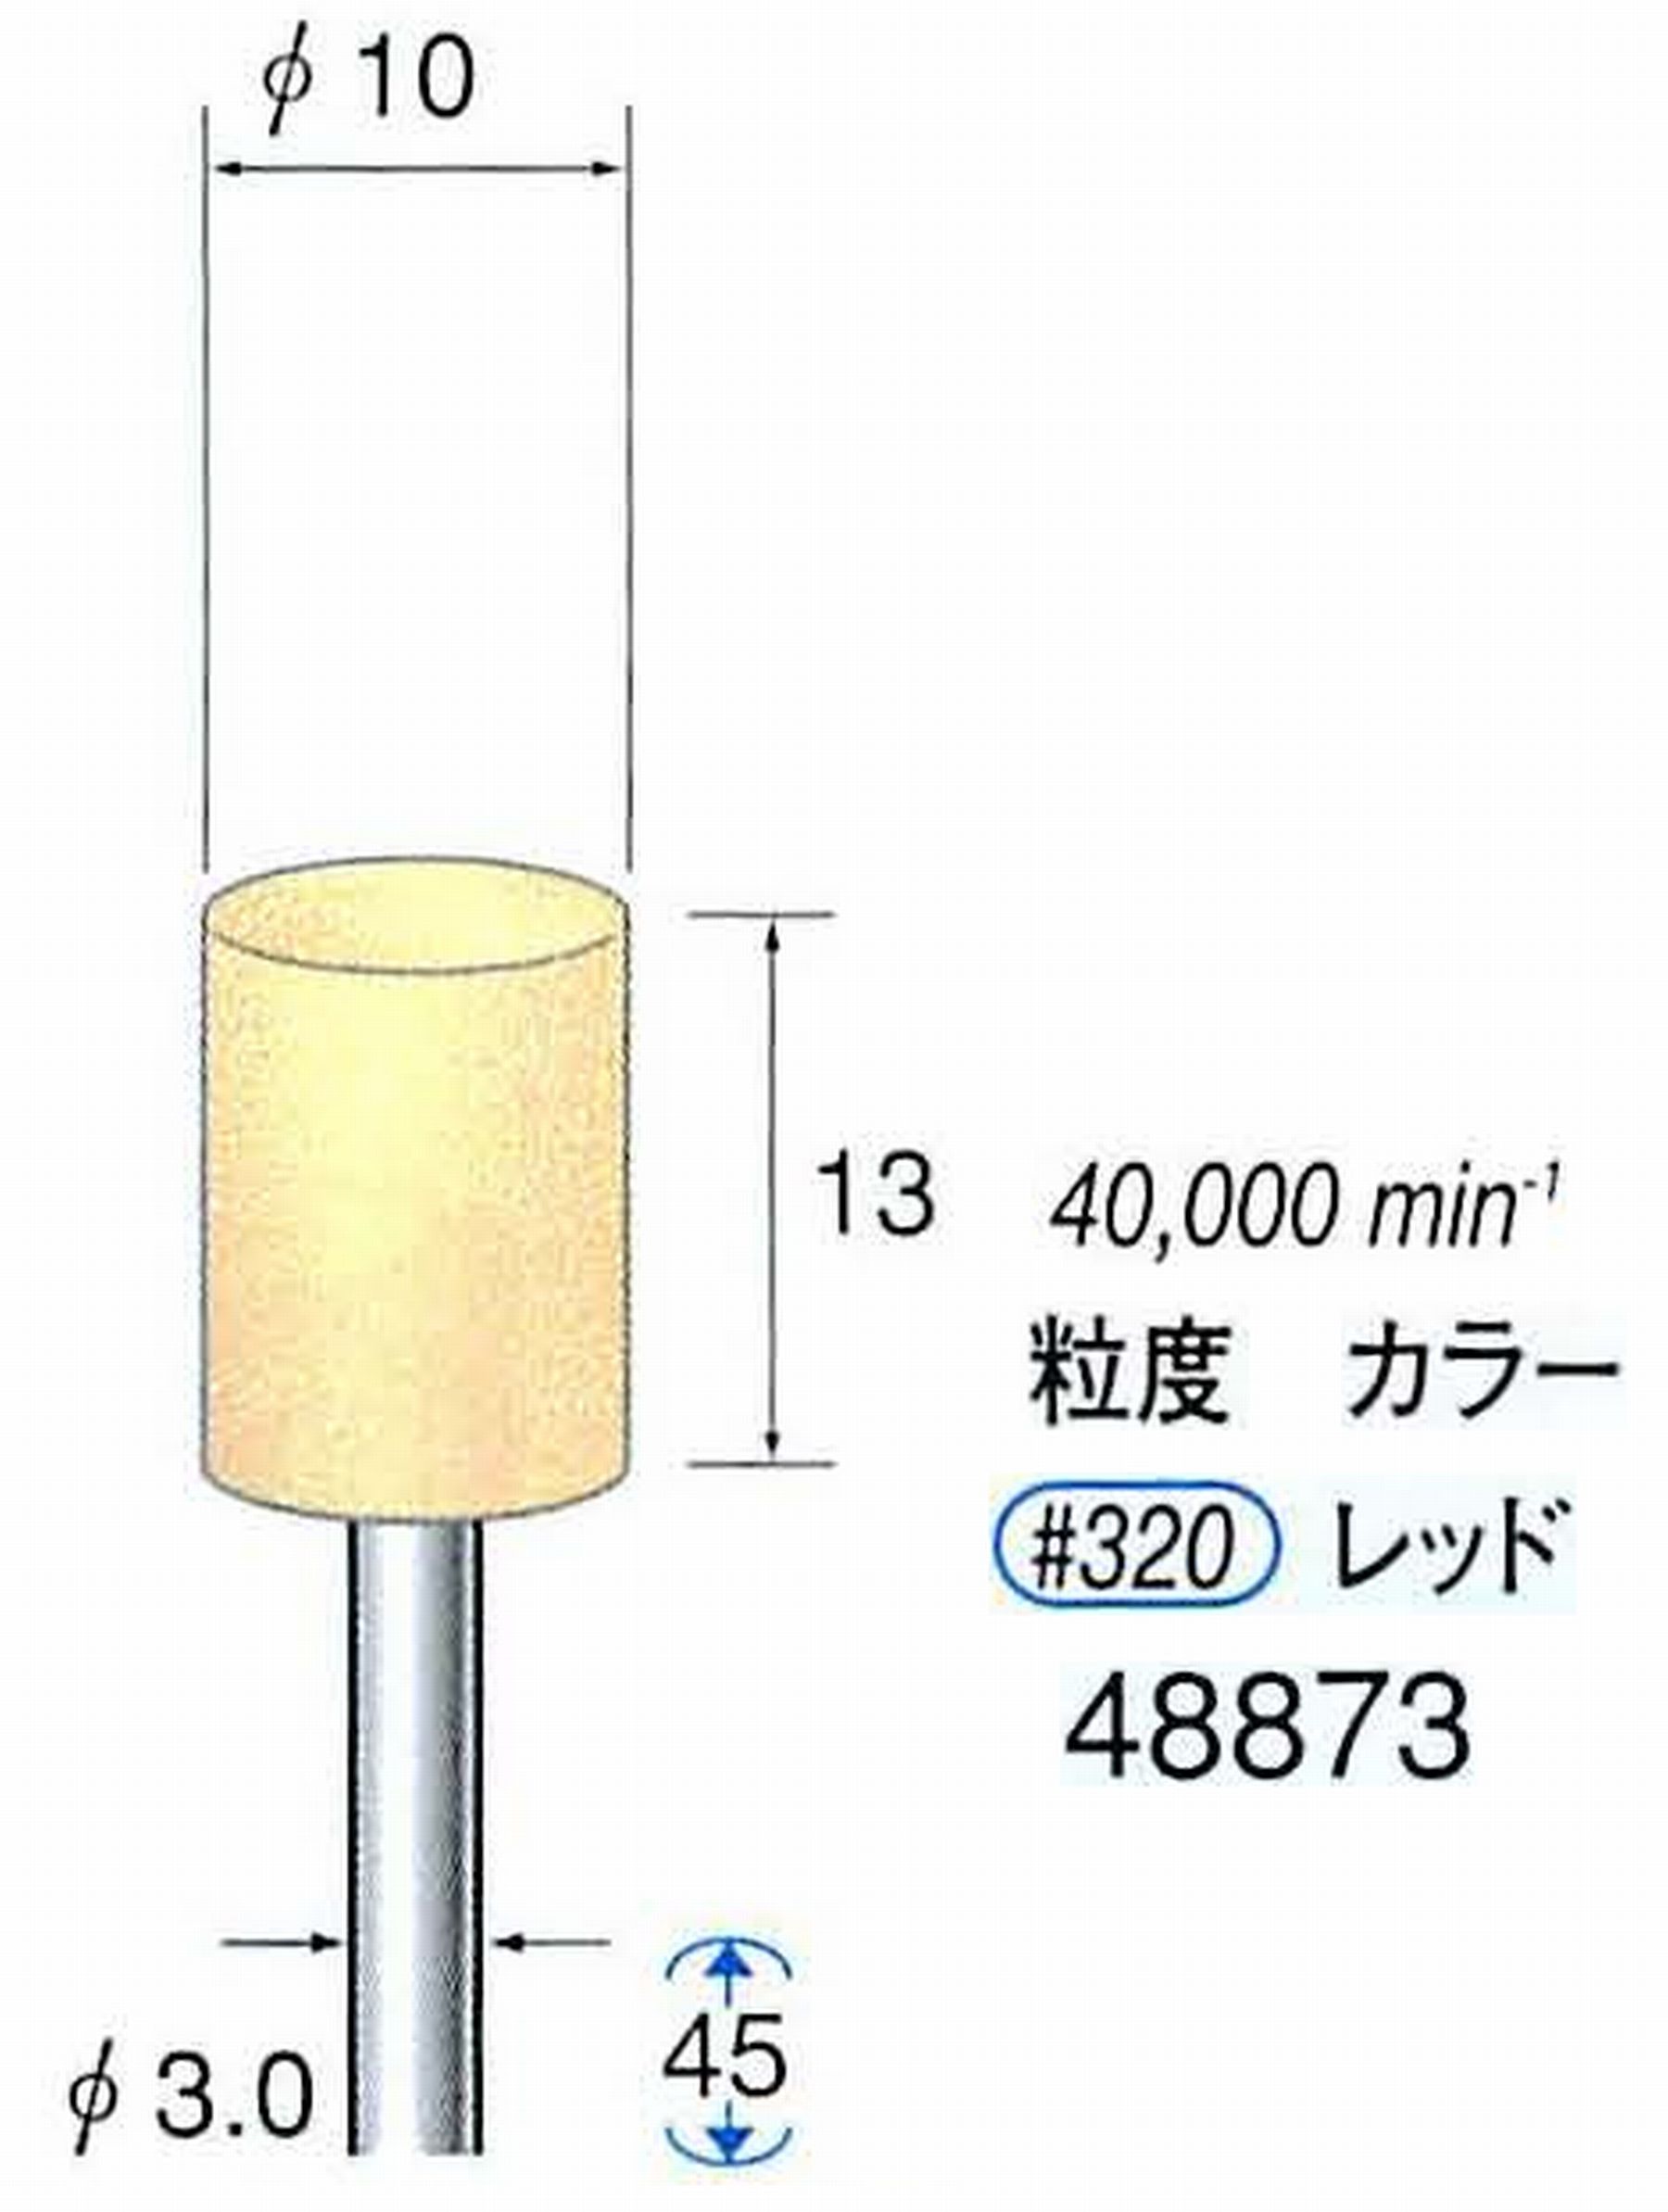 ナカニシ/NAKANISHI ポリッシュサンダー 軸径(シャンク)φ3.0mm 48873